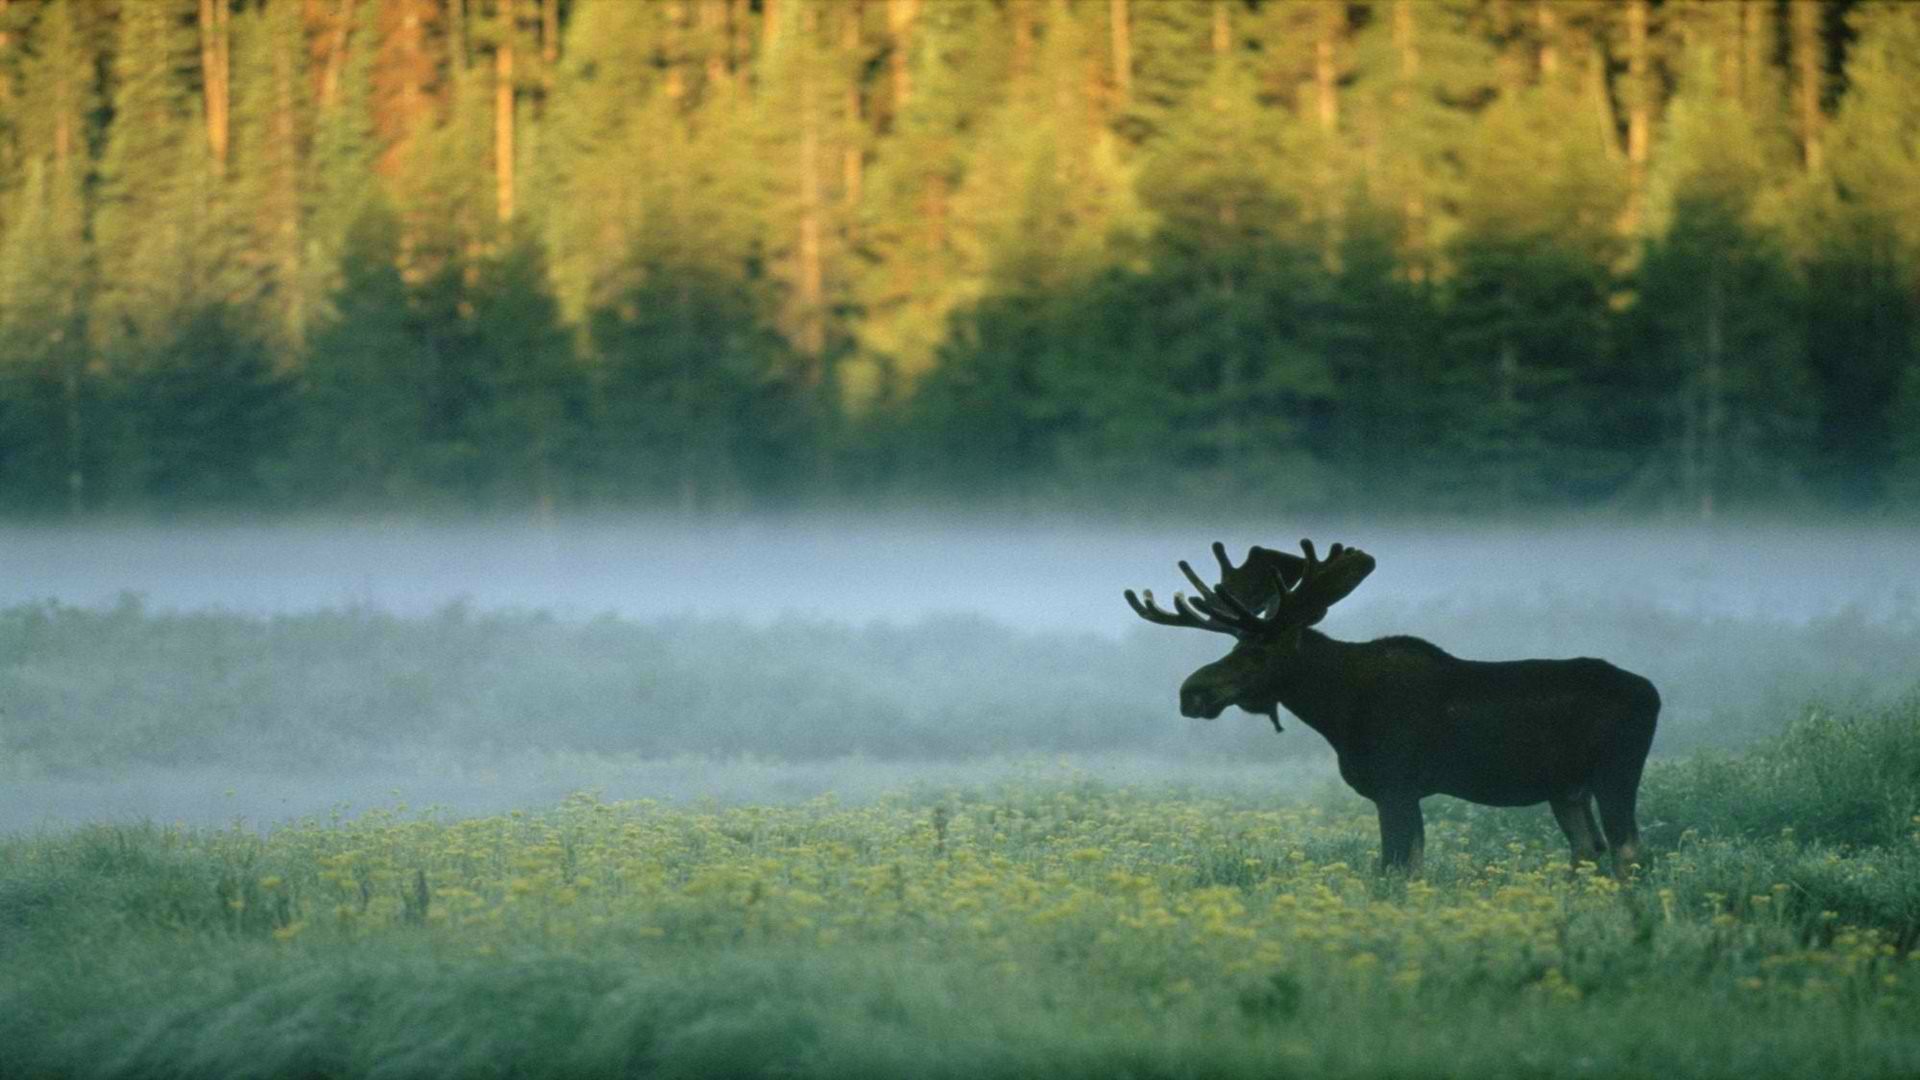 General 1920x1080 forest moose nature animals mist mammals